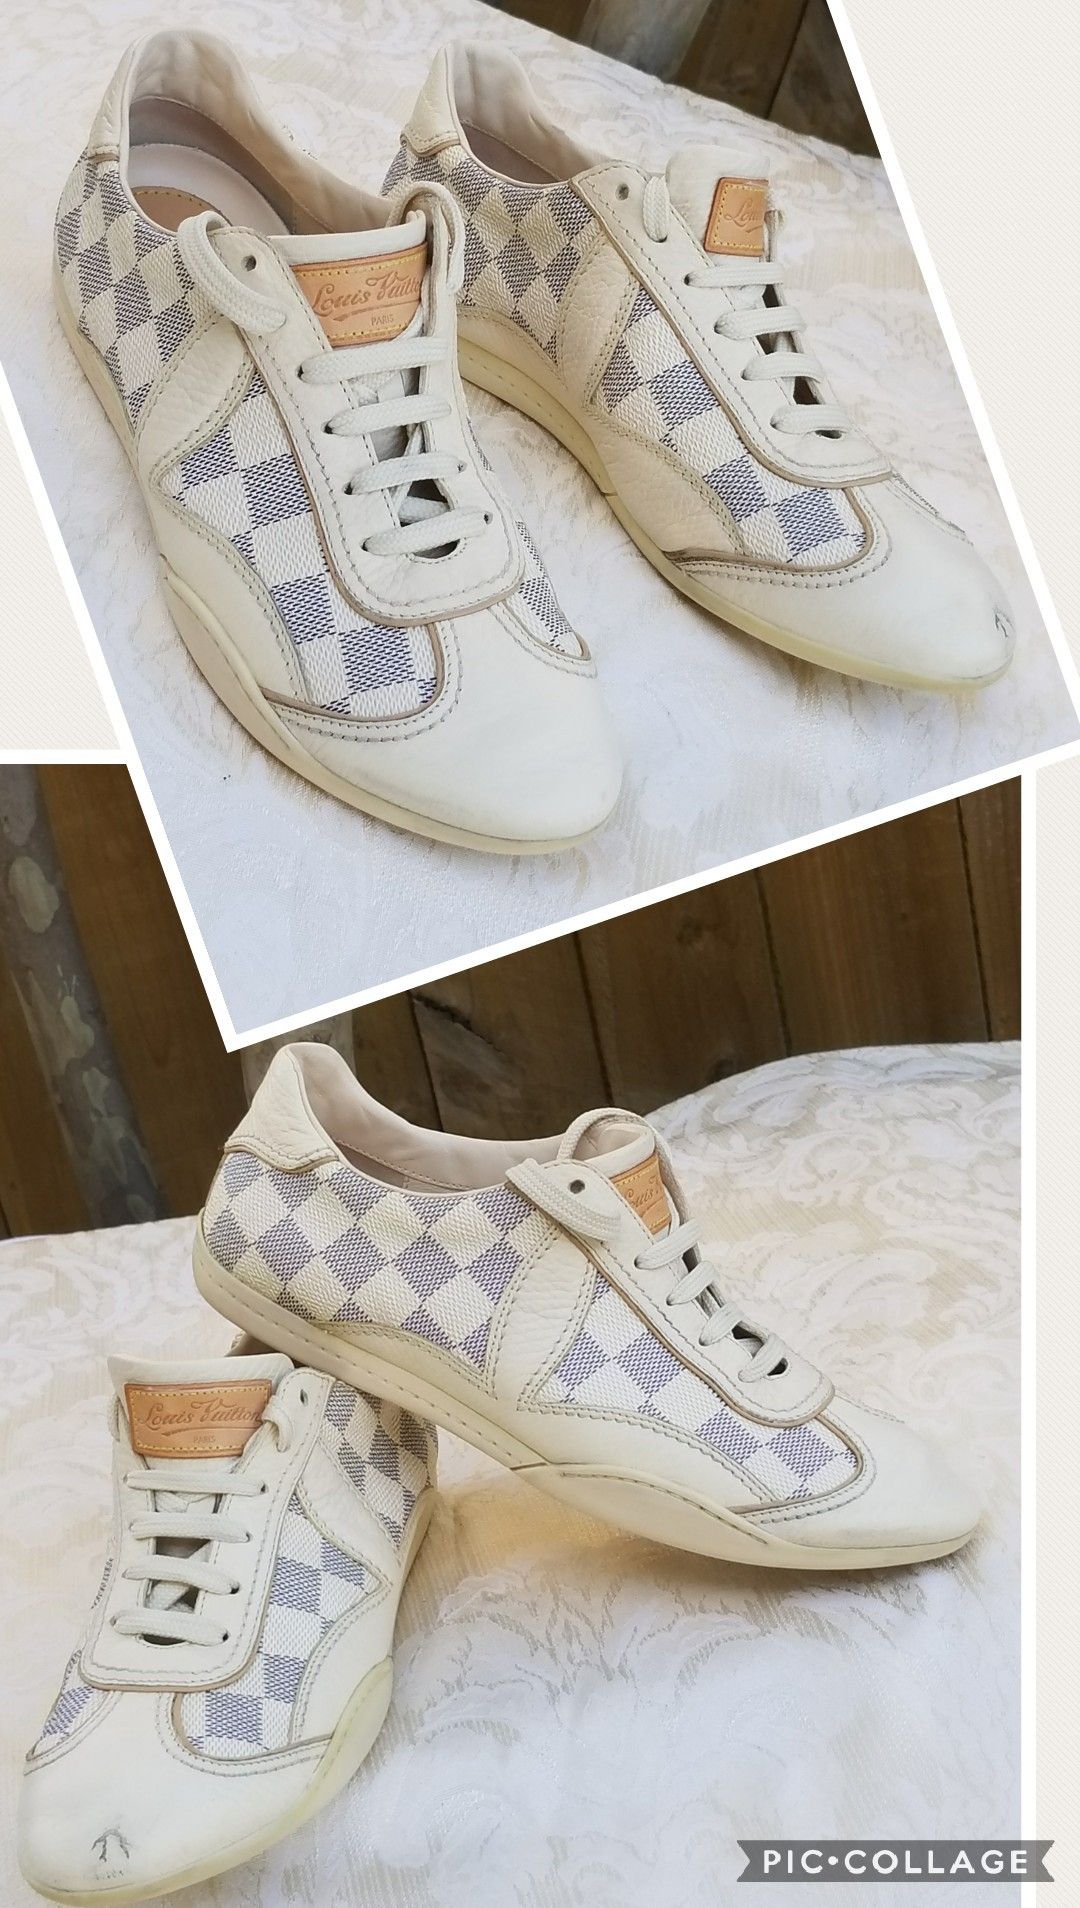 Louis Vuitton Shoes Vintage 